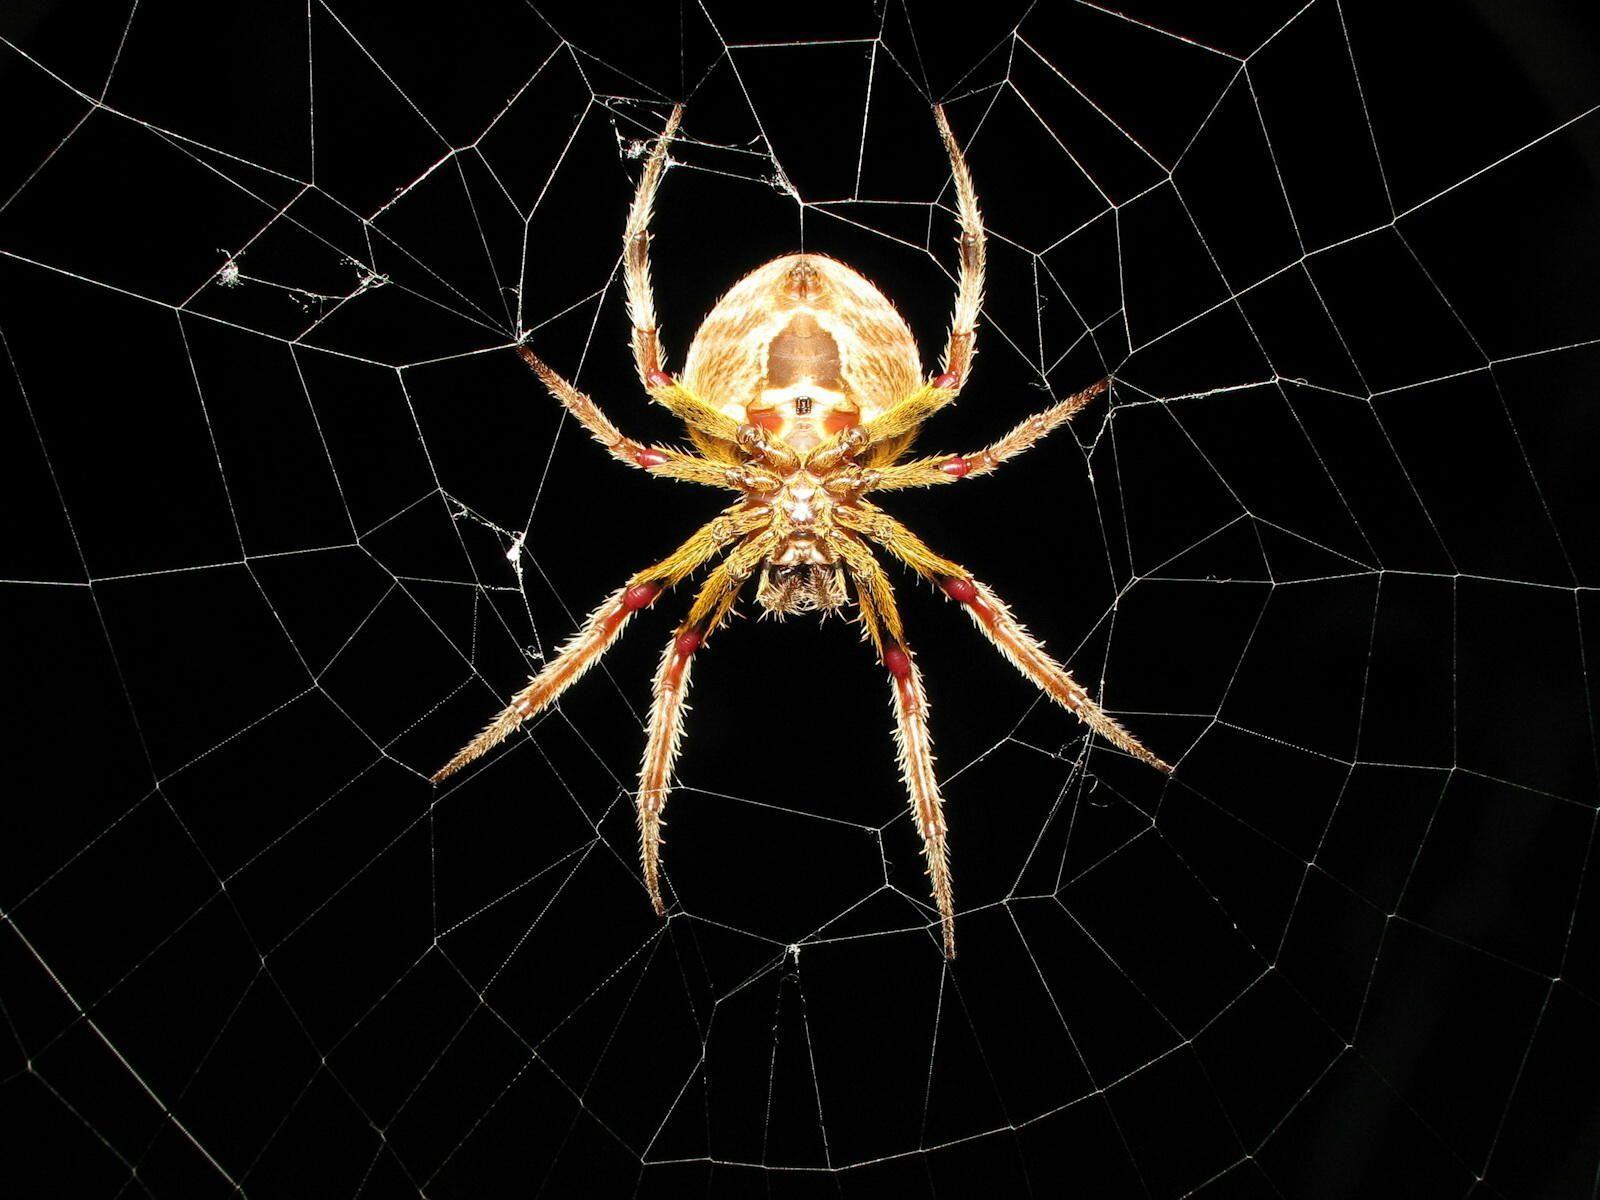 Spider in Net Wallpaper 1600x1200PX Wallpaper Spider